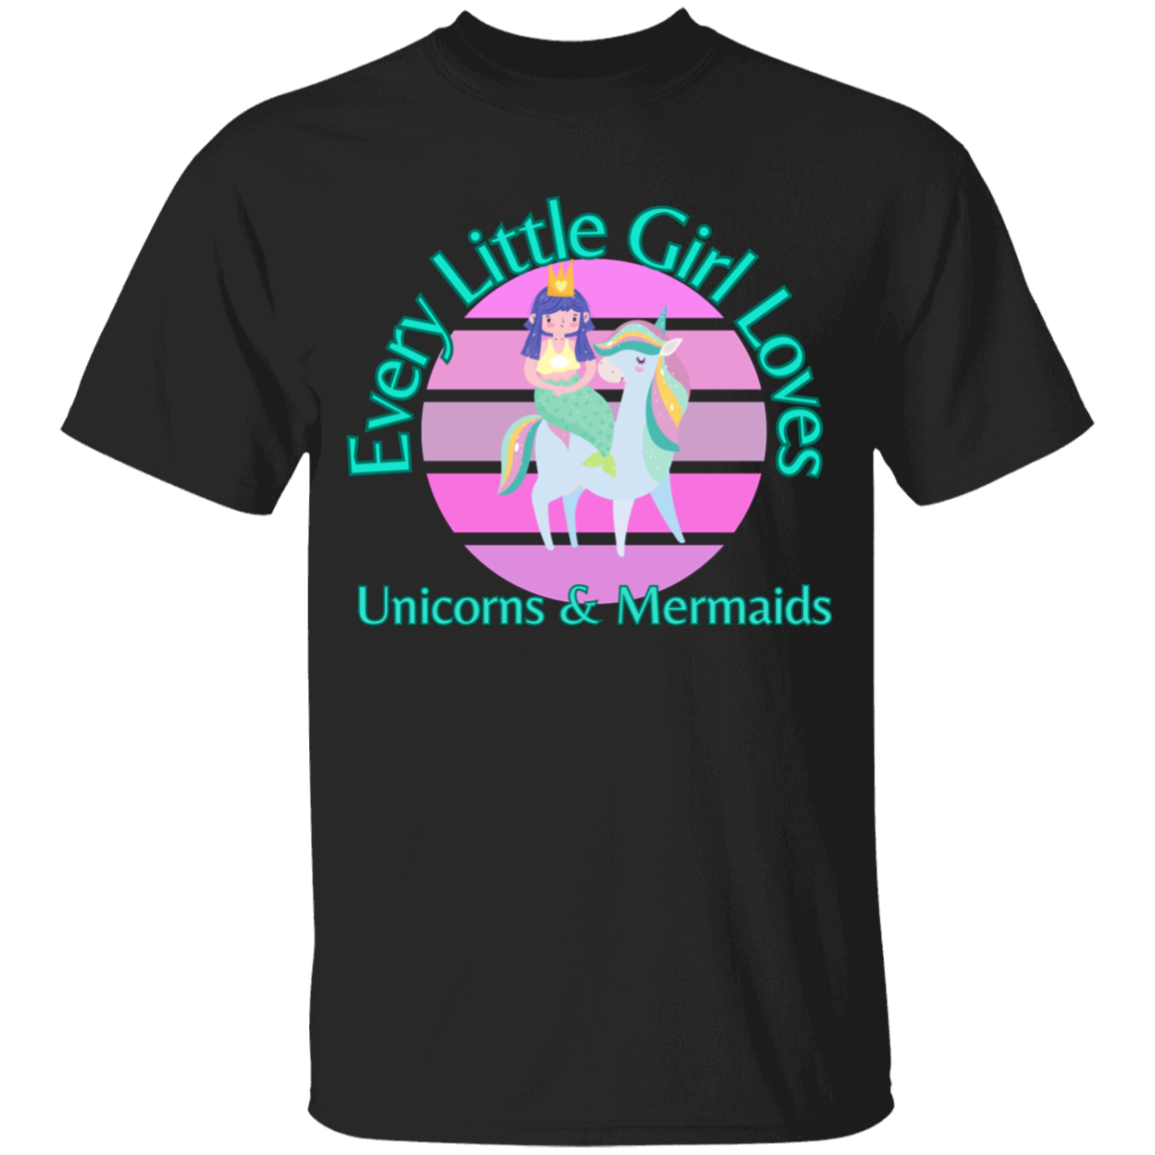 Every Little Girl Loves Unicorns and Mermaids T-Shirt For Girls